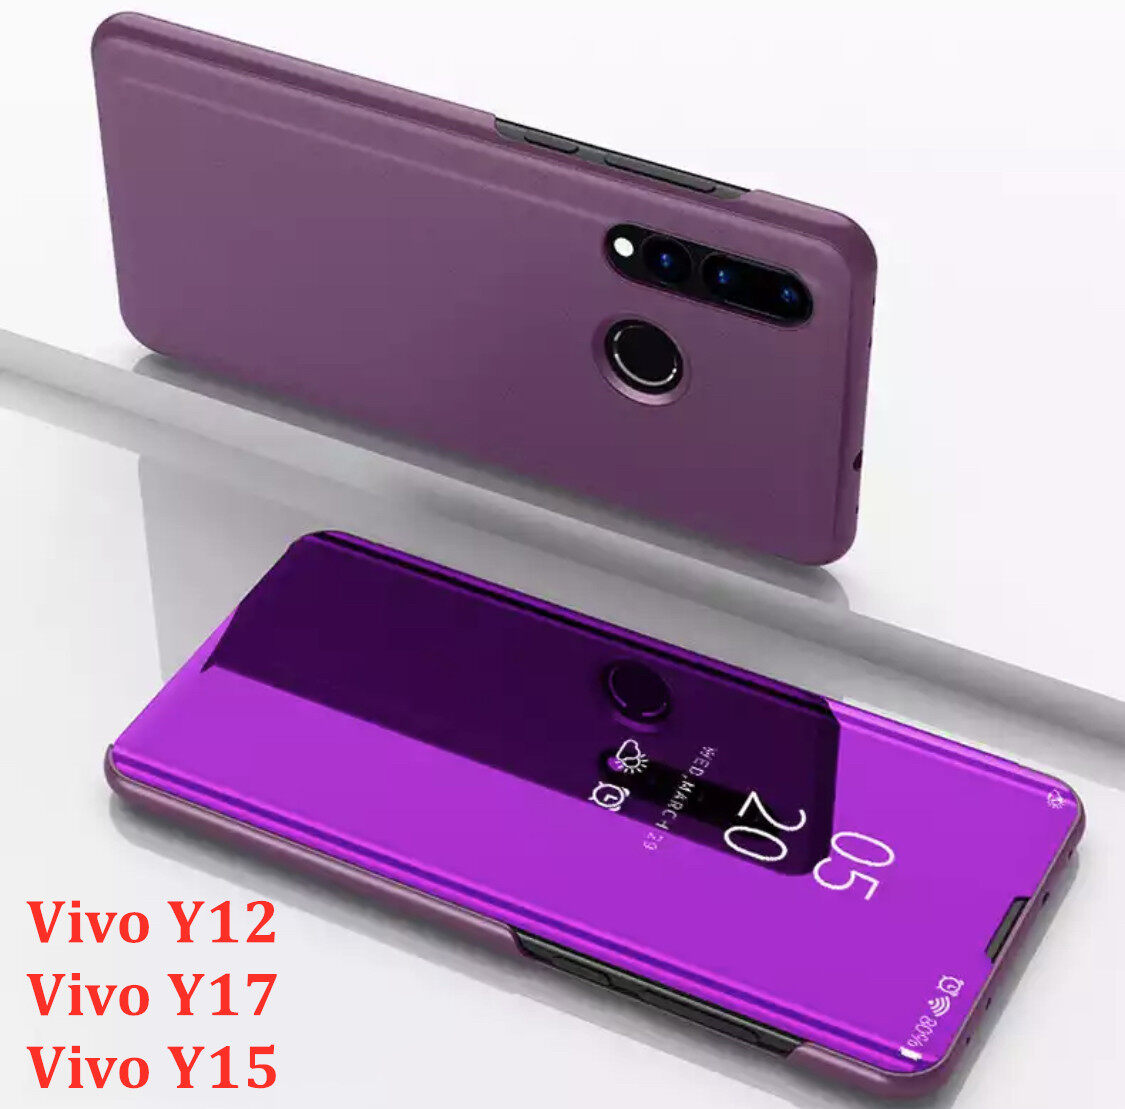 [ส่งจากไทย] Case Vivo Y17 เคสเปิดปิดเงา สำหรับรุ่น Vivo Y17 ฝาพับ กระเป๋า vivo วาย17 Smart Case เคสวีโว่ Y17 เคสฝาเปิดปิดเงา สมาร์ทเคส เคสตั้งได้ Vivo Y17 Flip Mirror Leather Case With Stand Holder เคสมือถือ เคสโทรศัพท์ รับประกันความพอใจ สี สีม่วง